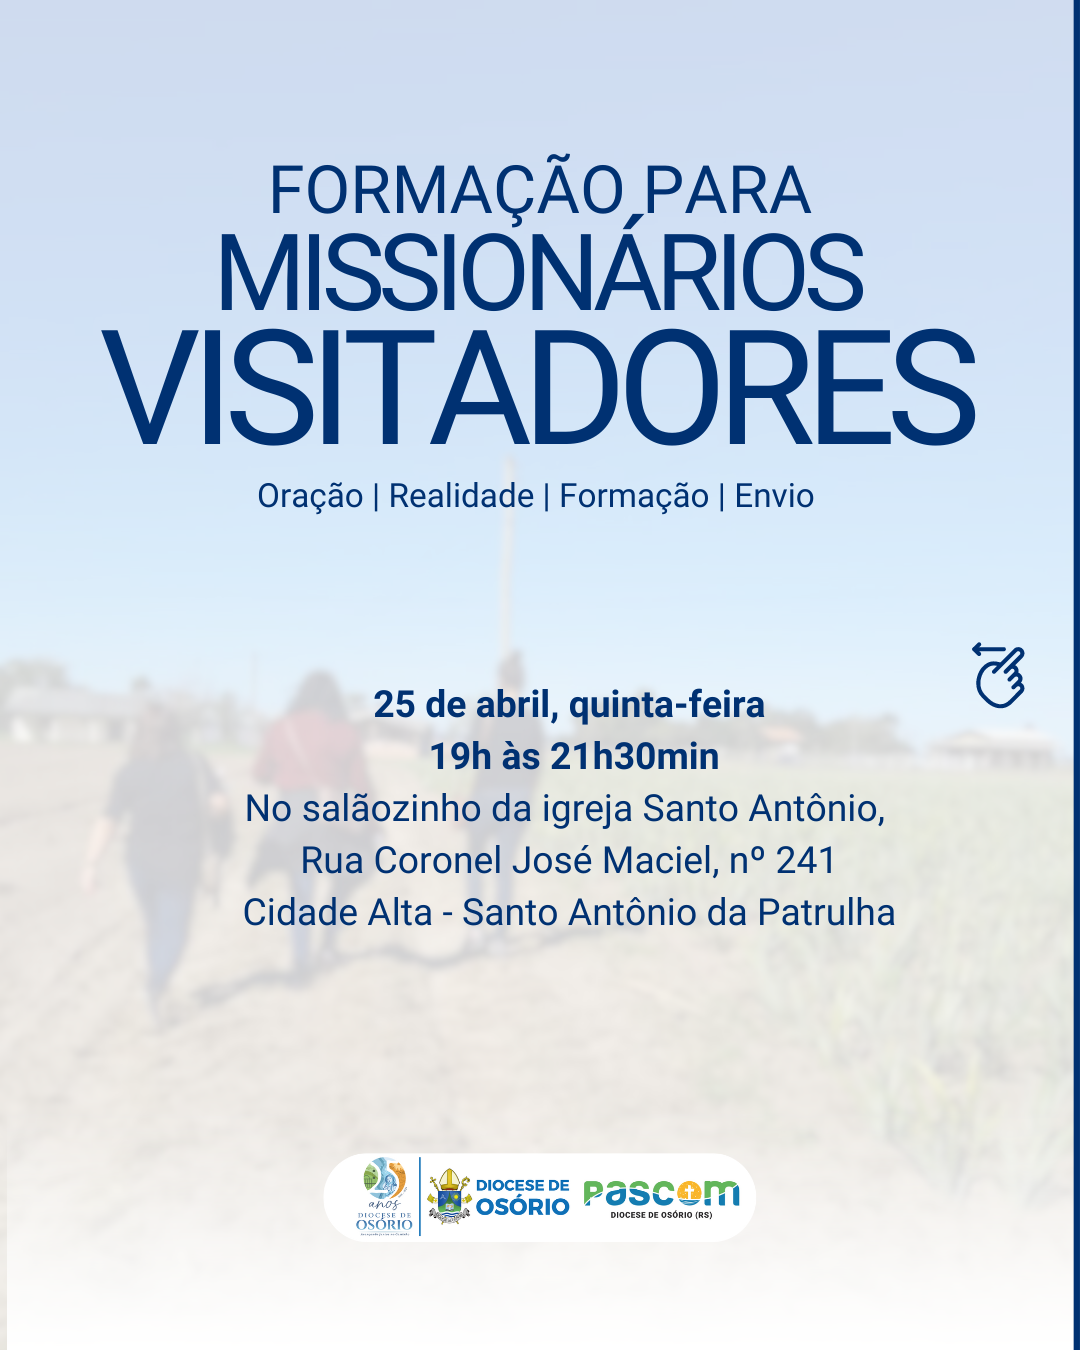 Formação para Missionários Visitadores ocorrerá no dia 25 de abril em Santo Antônio da Patrulha